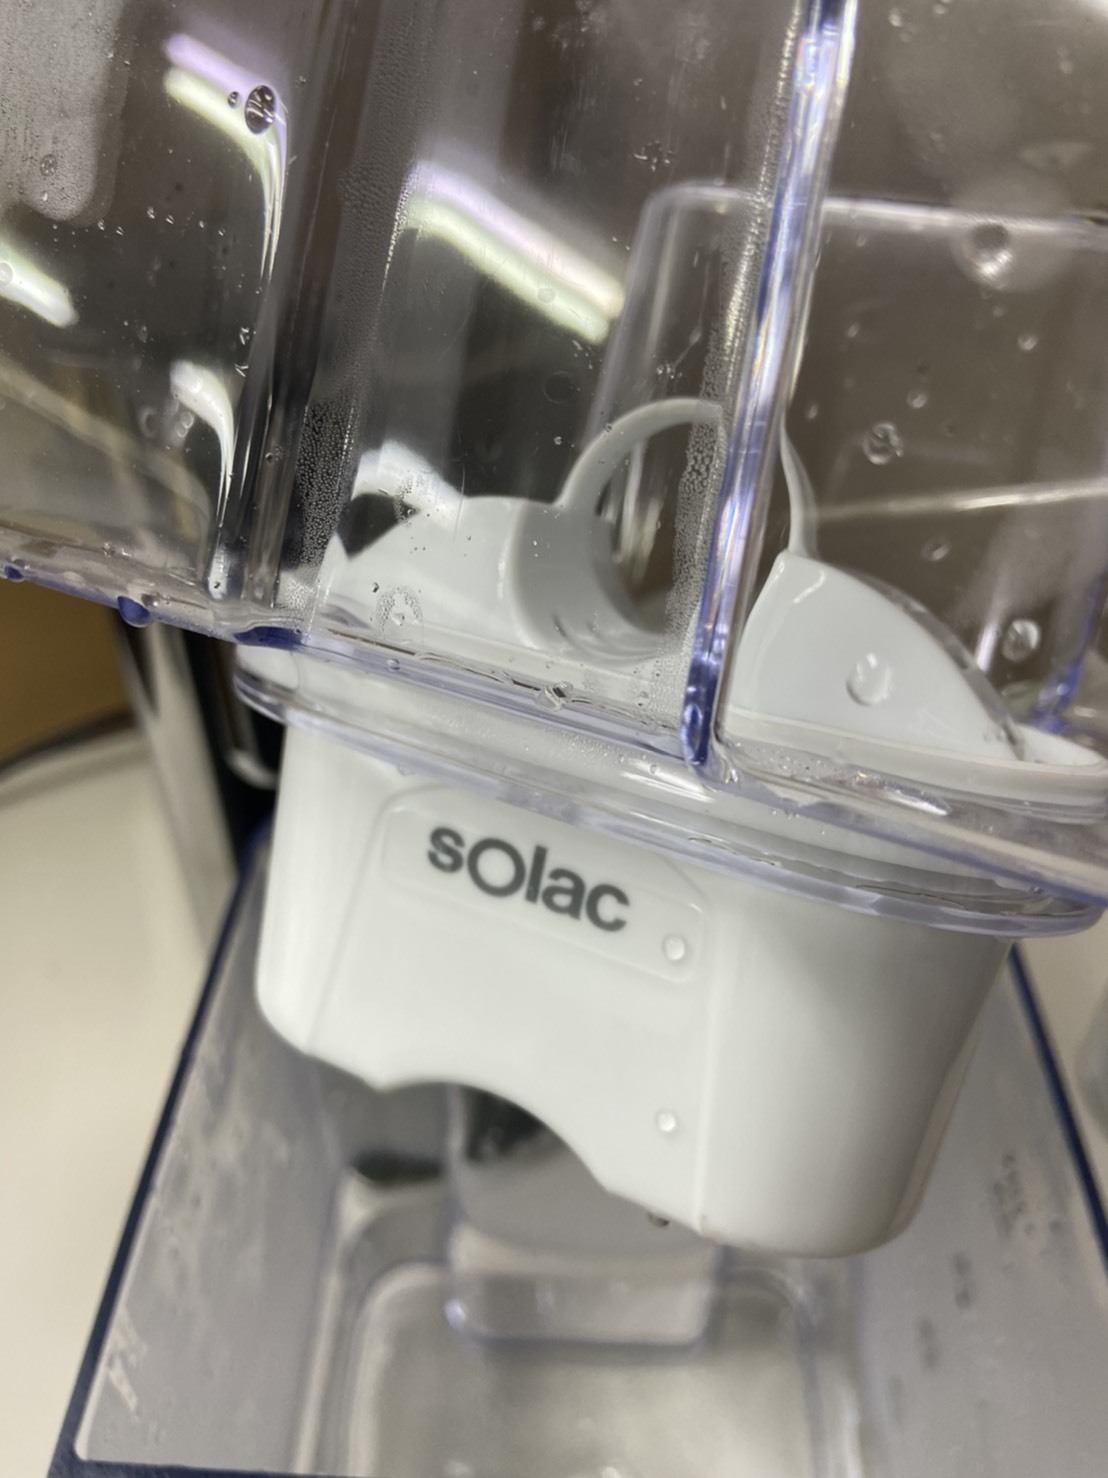 sOlac 瞬熱式淨水器 SMA-T20S 免安裝的小濾水器